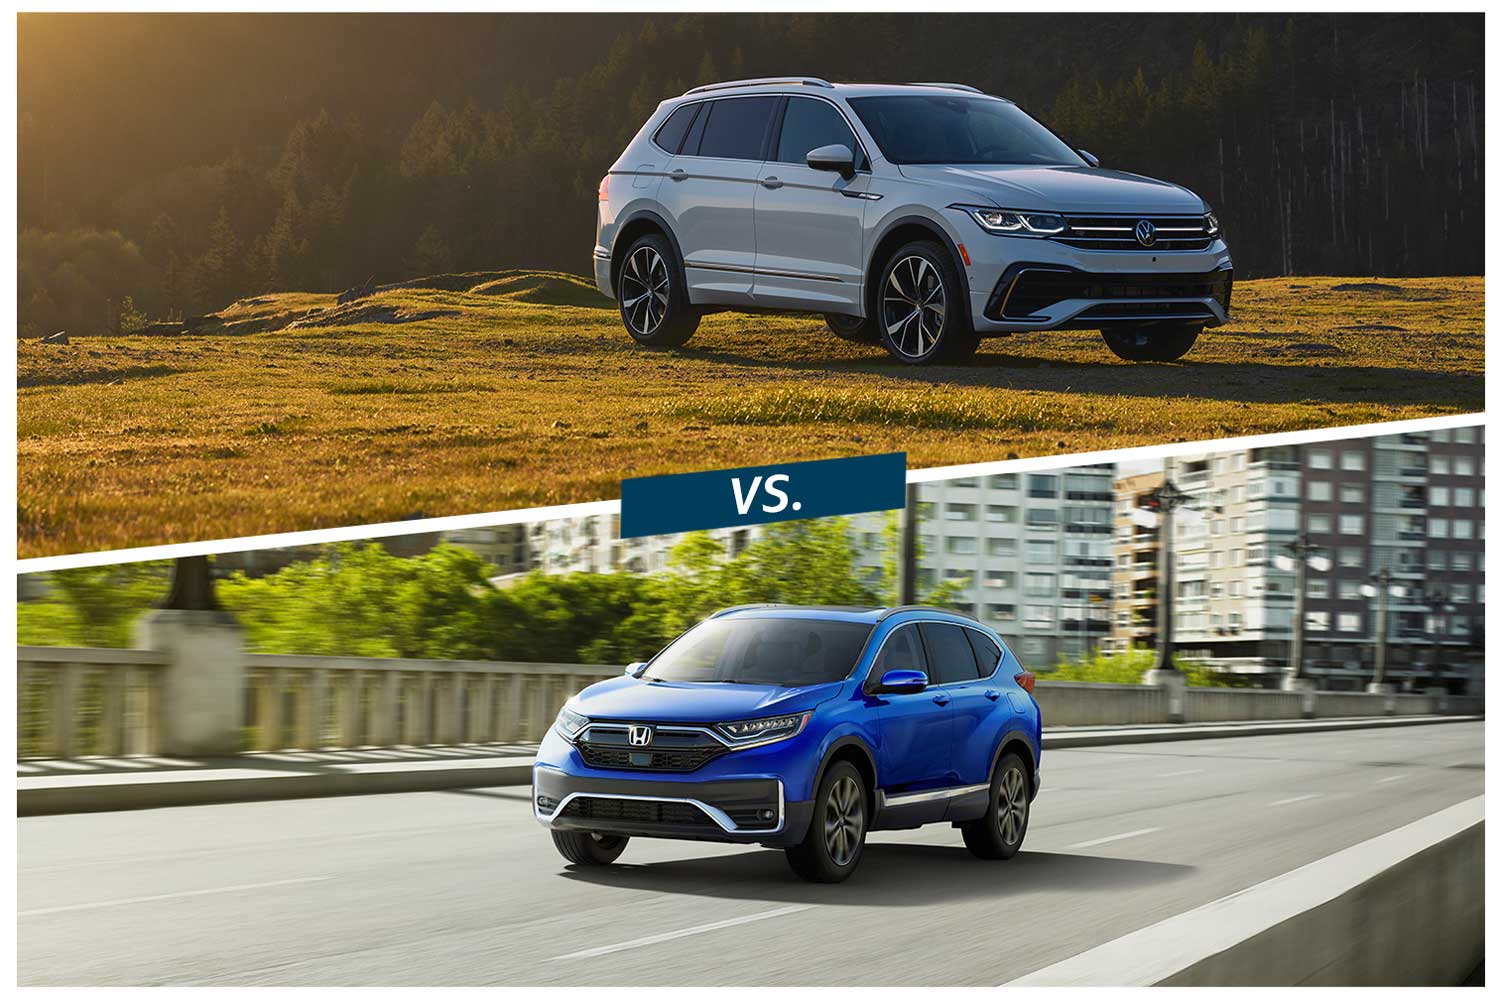 2022 Volkswagen Tiguan SEL R-Line in Oryx White vs 2022 Honda CR-V Touring in blue